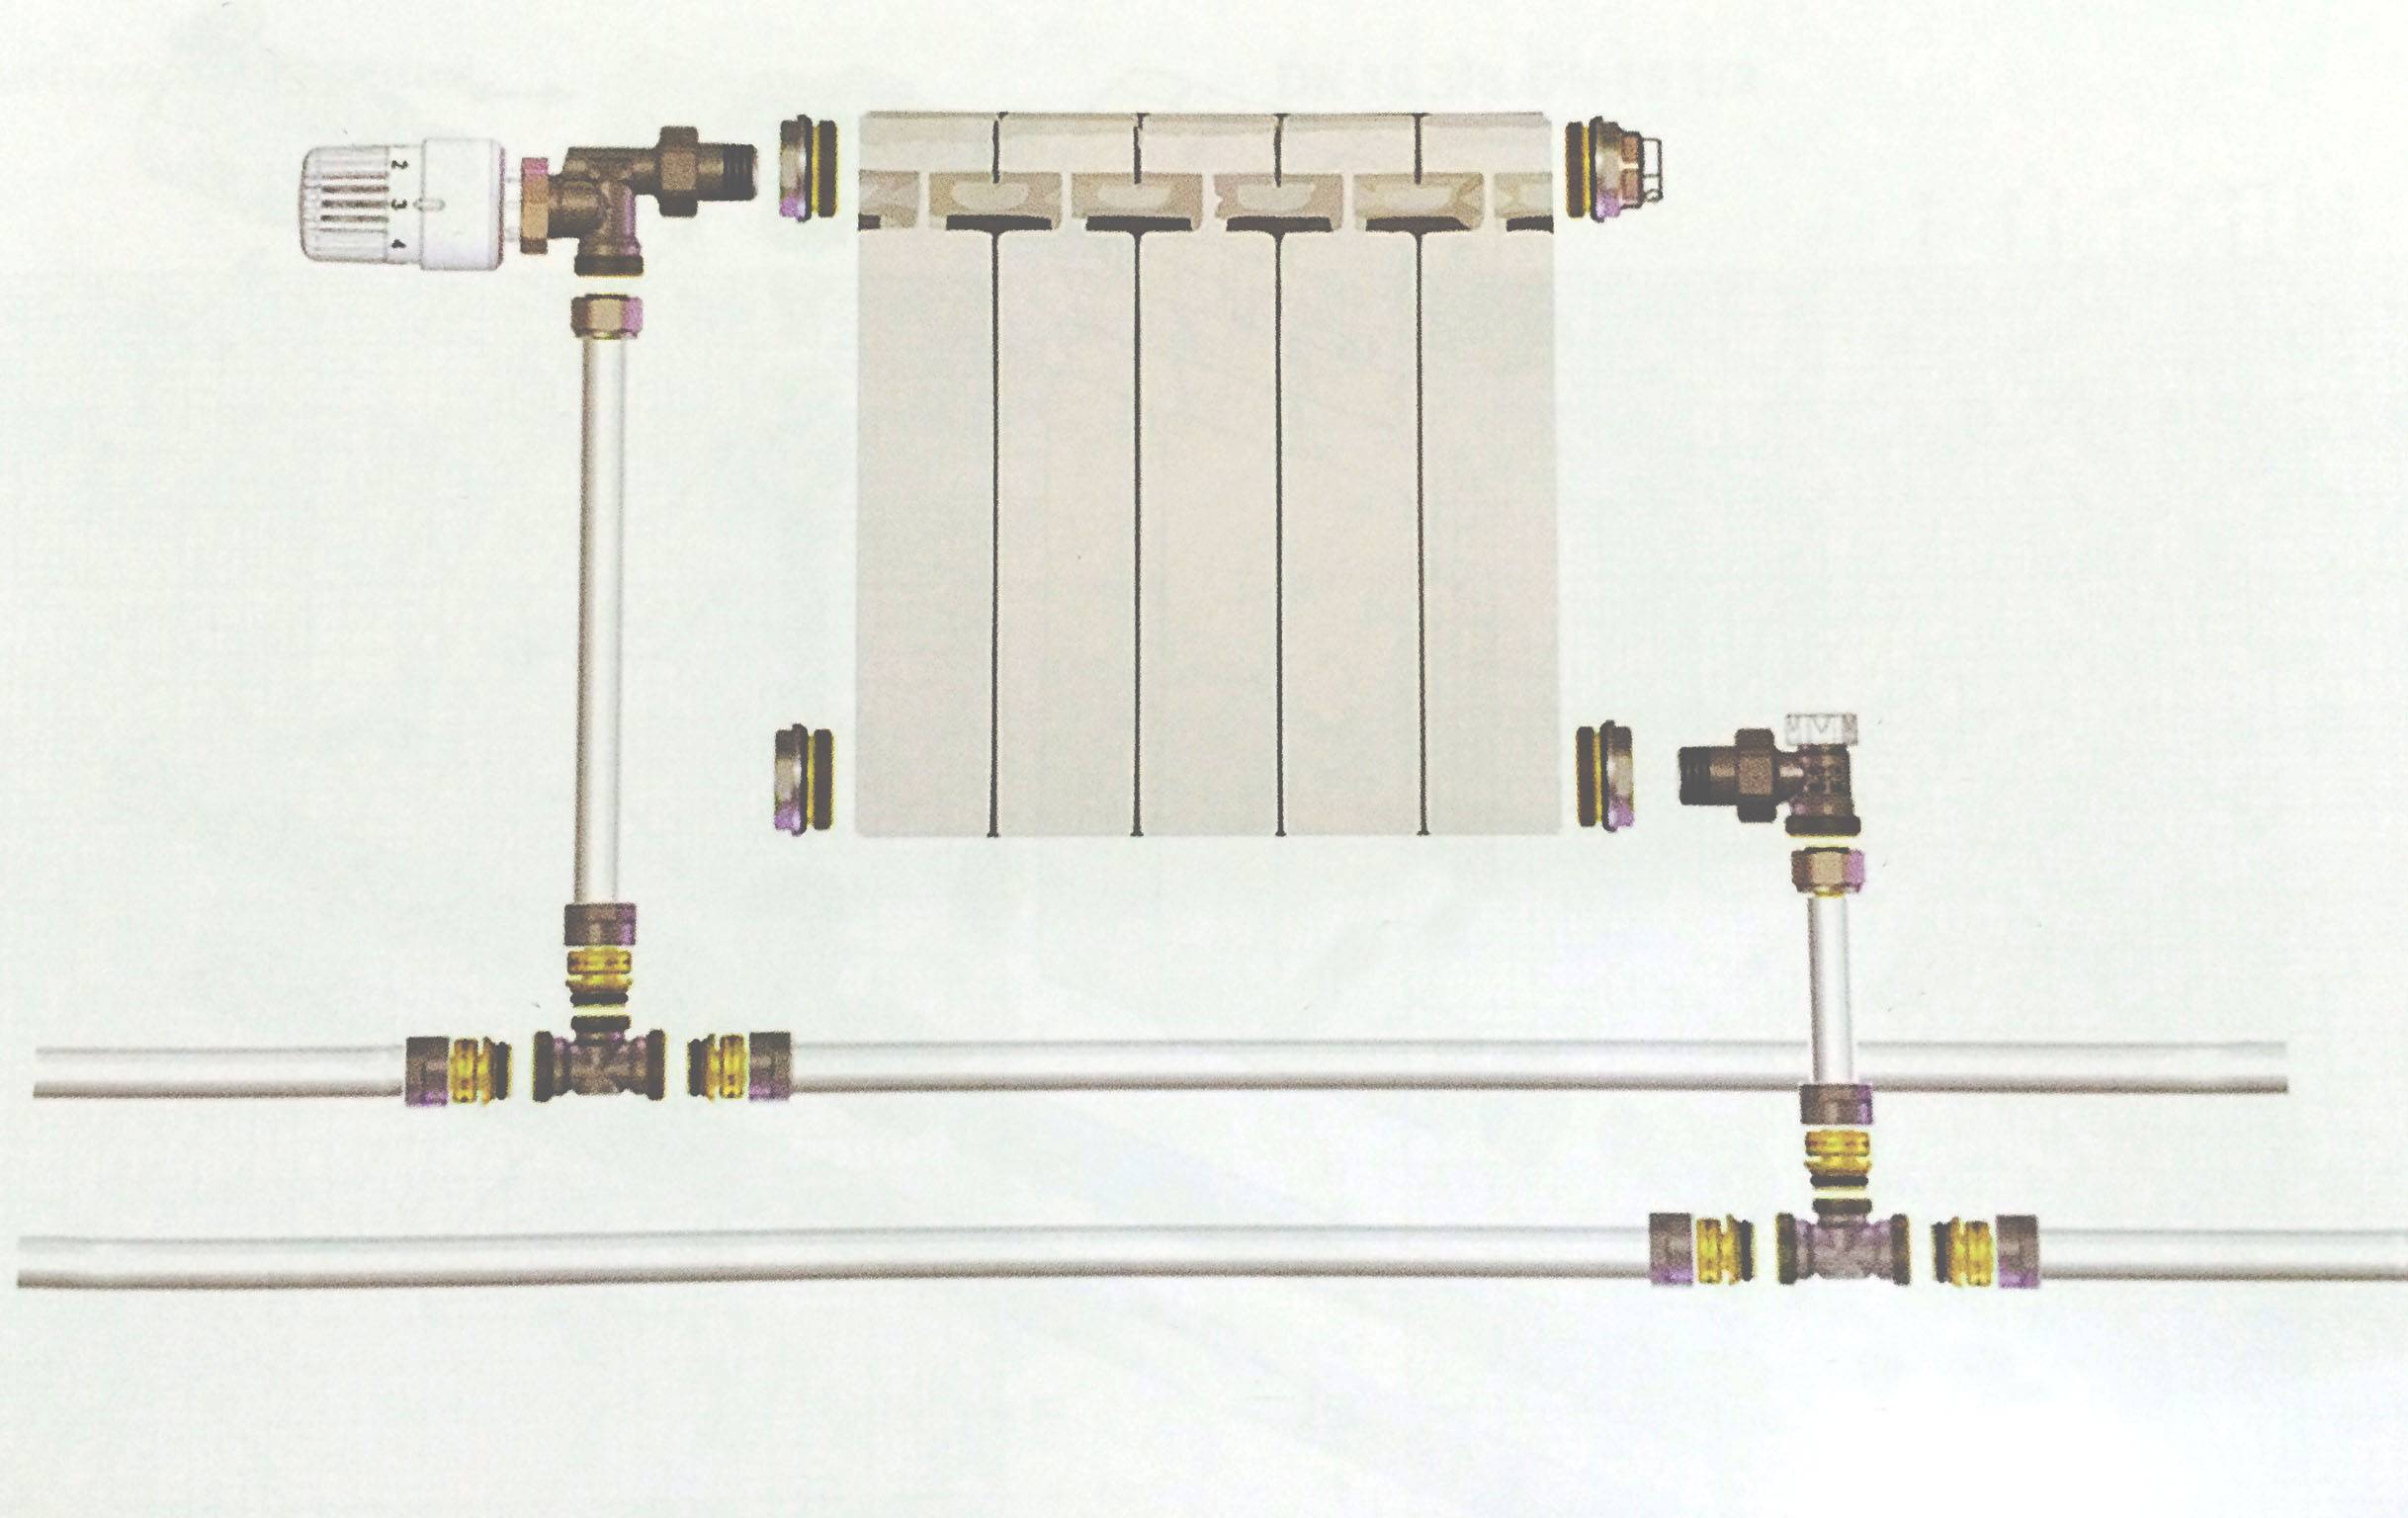 Схемы и способы подключения радиаторов отопления - нижняя подводка, диагональное и другие варианты